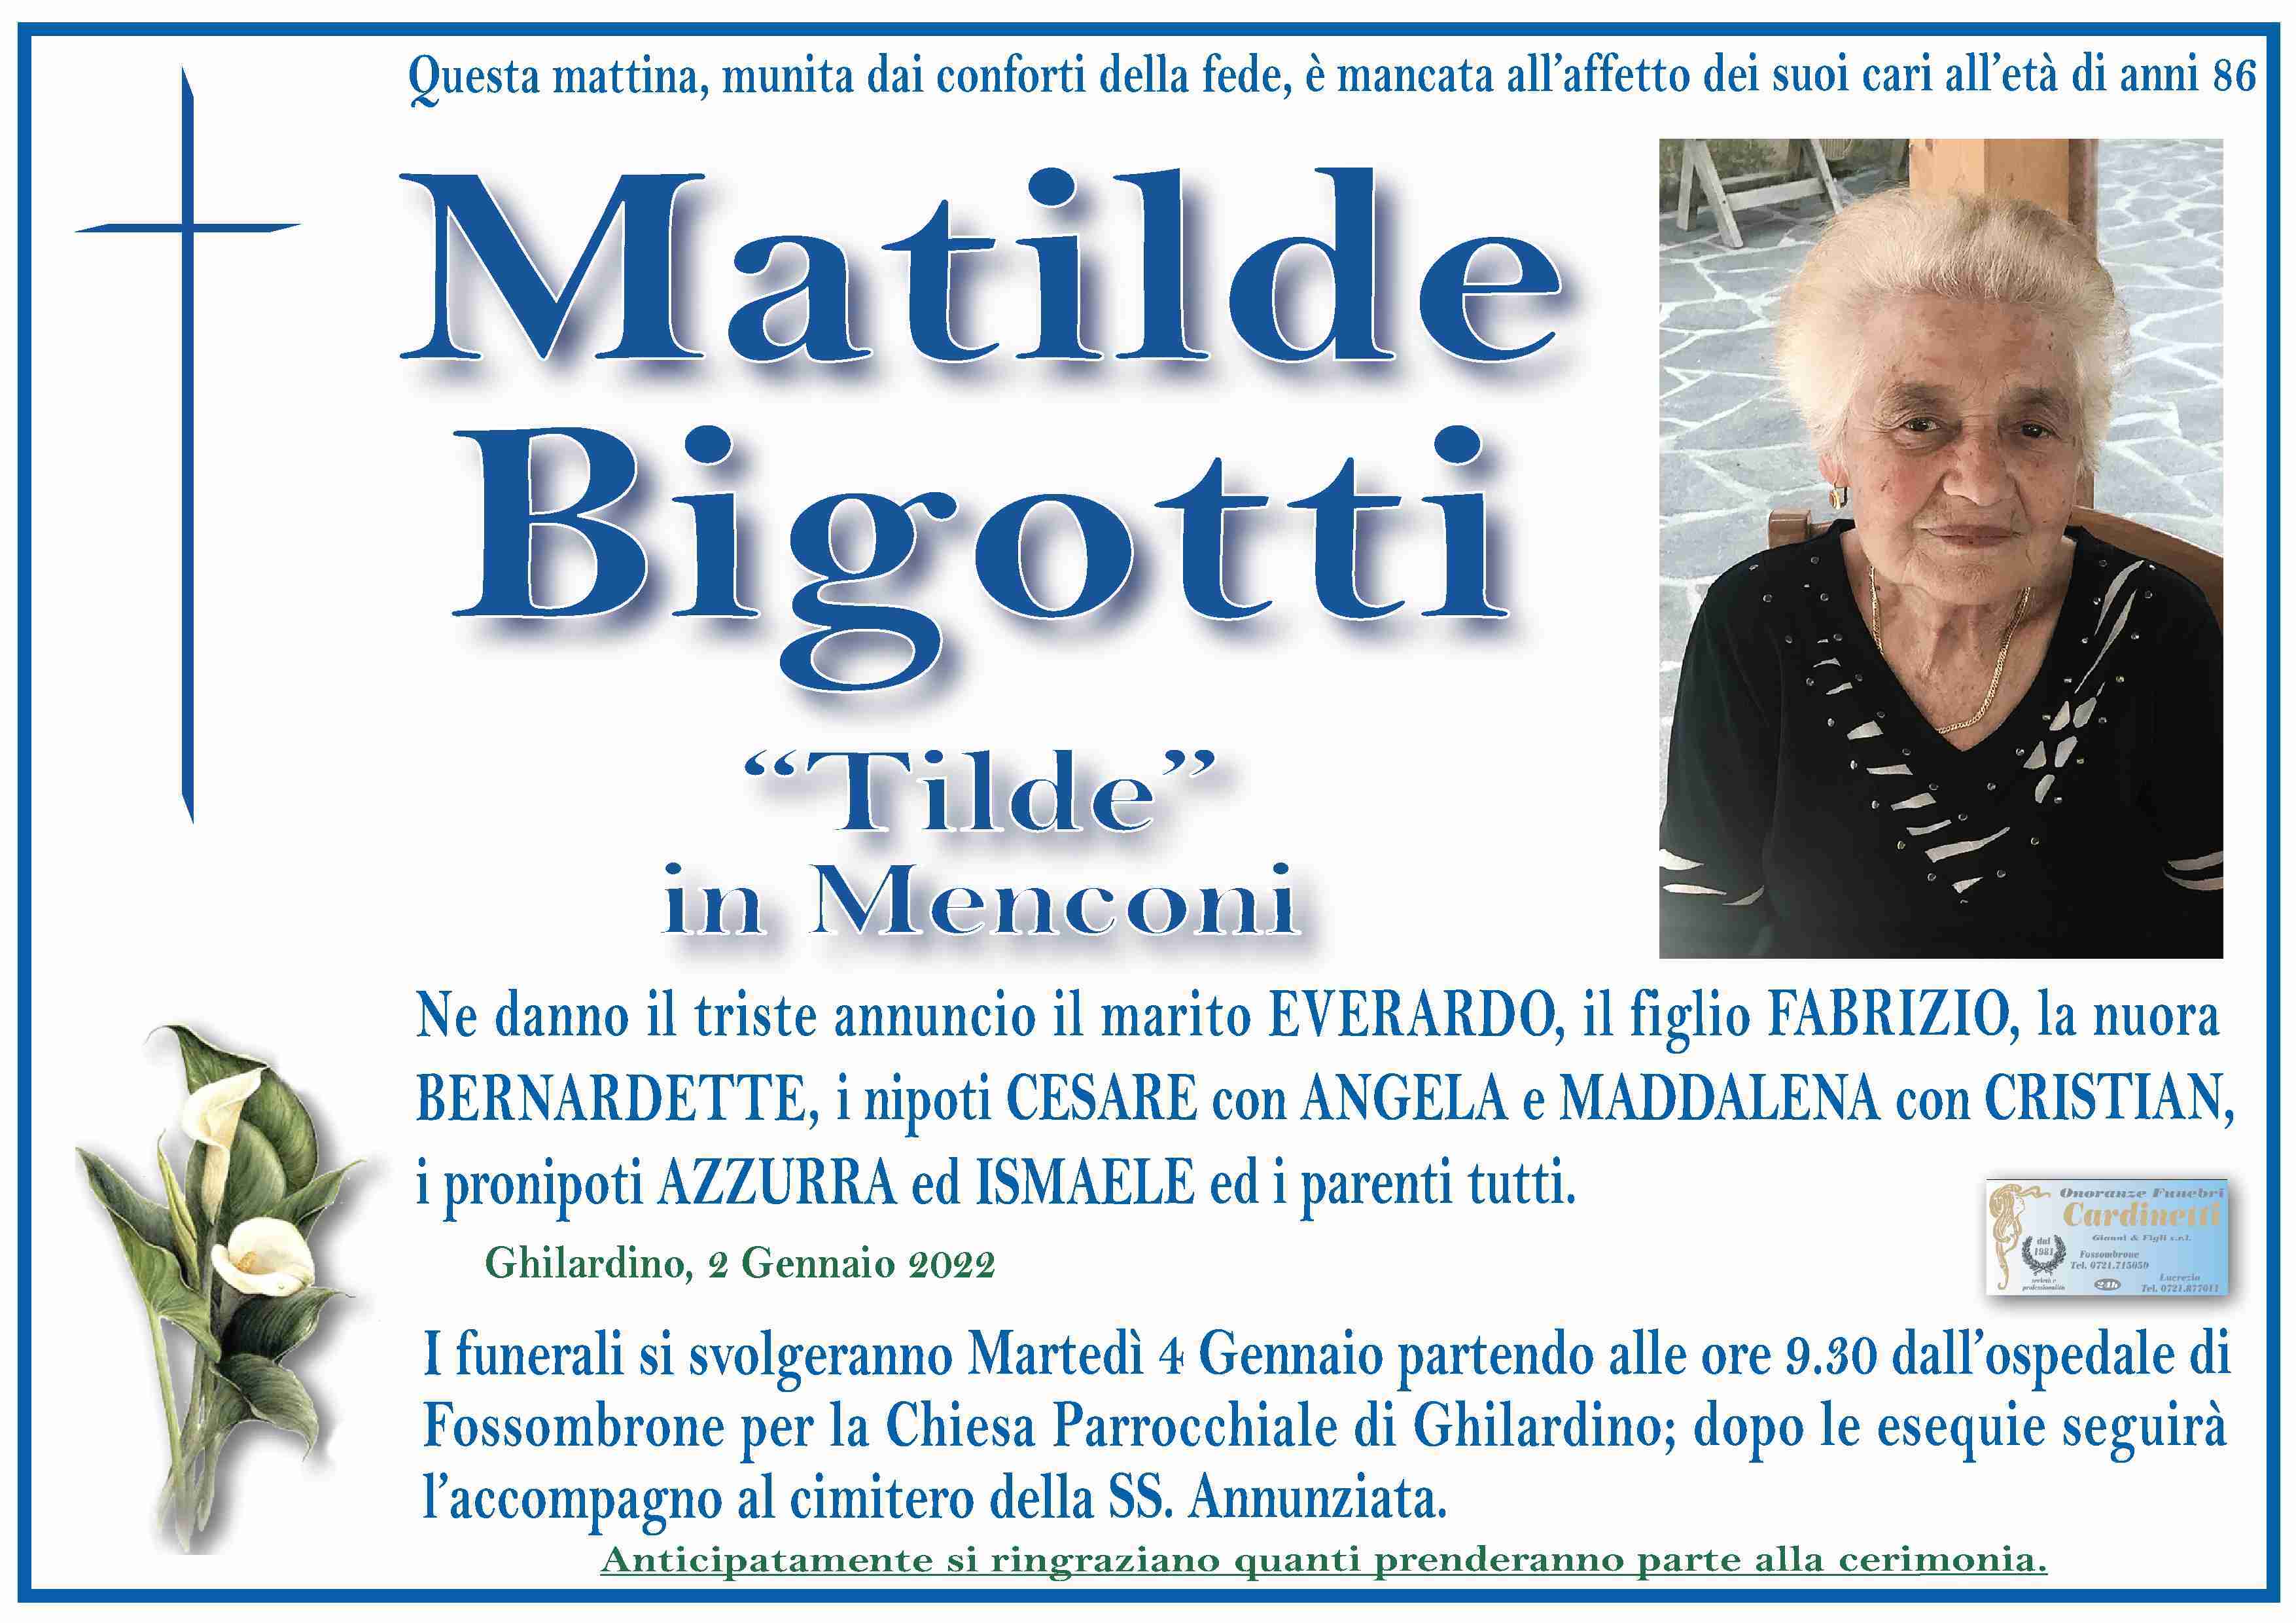 Matilde Bigotti